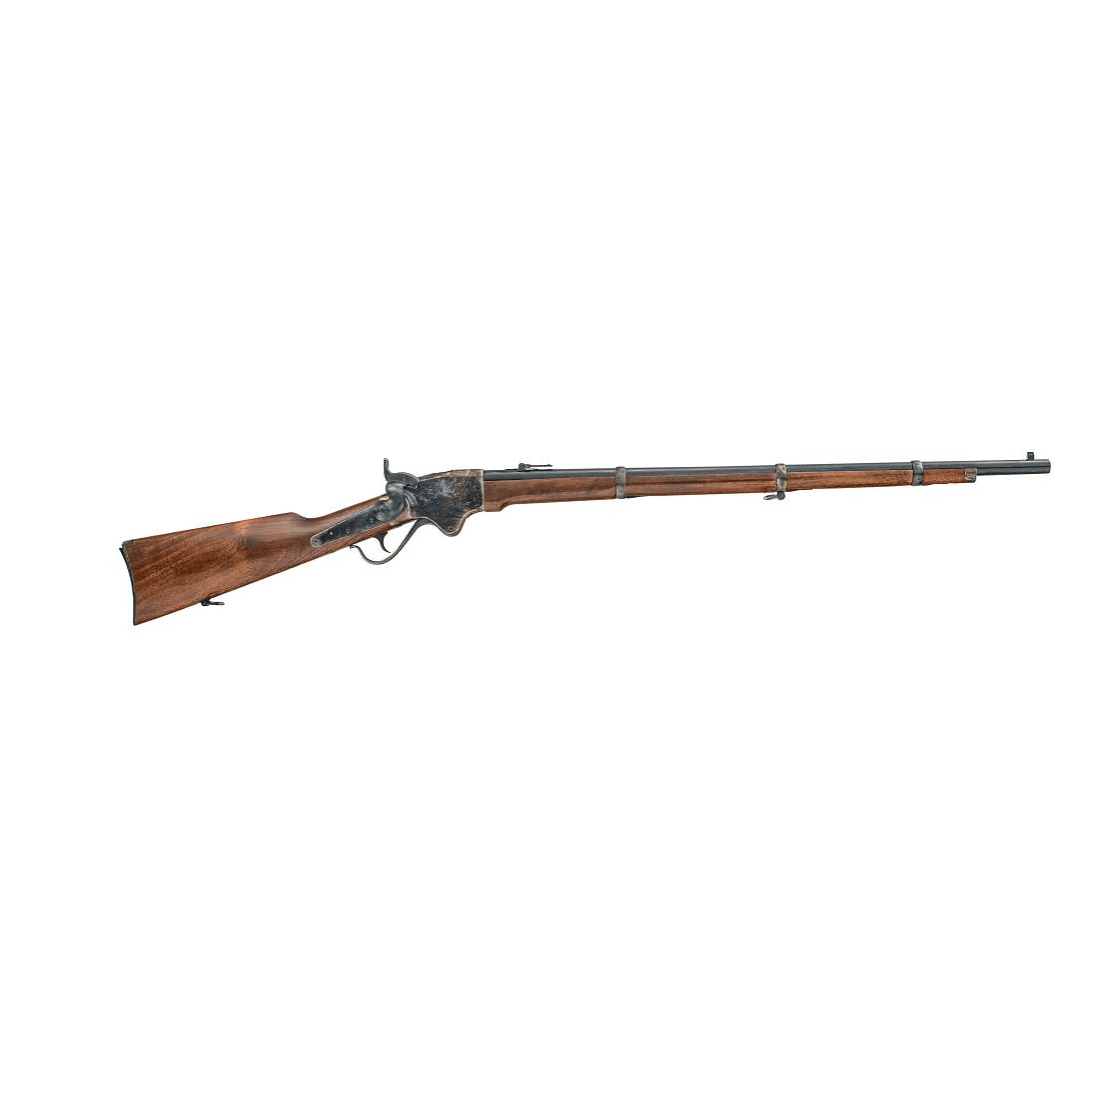 Chiappa 1860 Spencer Rifle Unterhebelrepetierbüchse Kal. 44-40 WCF